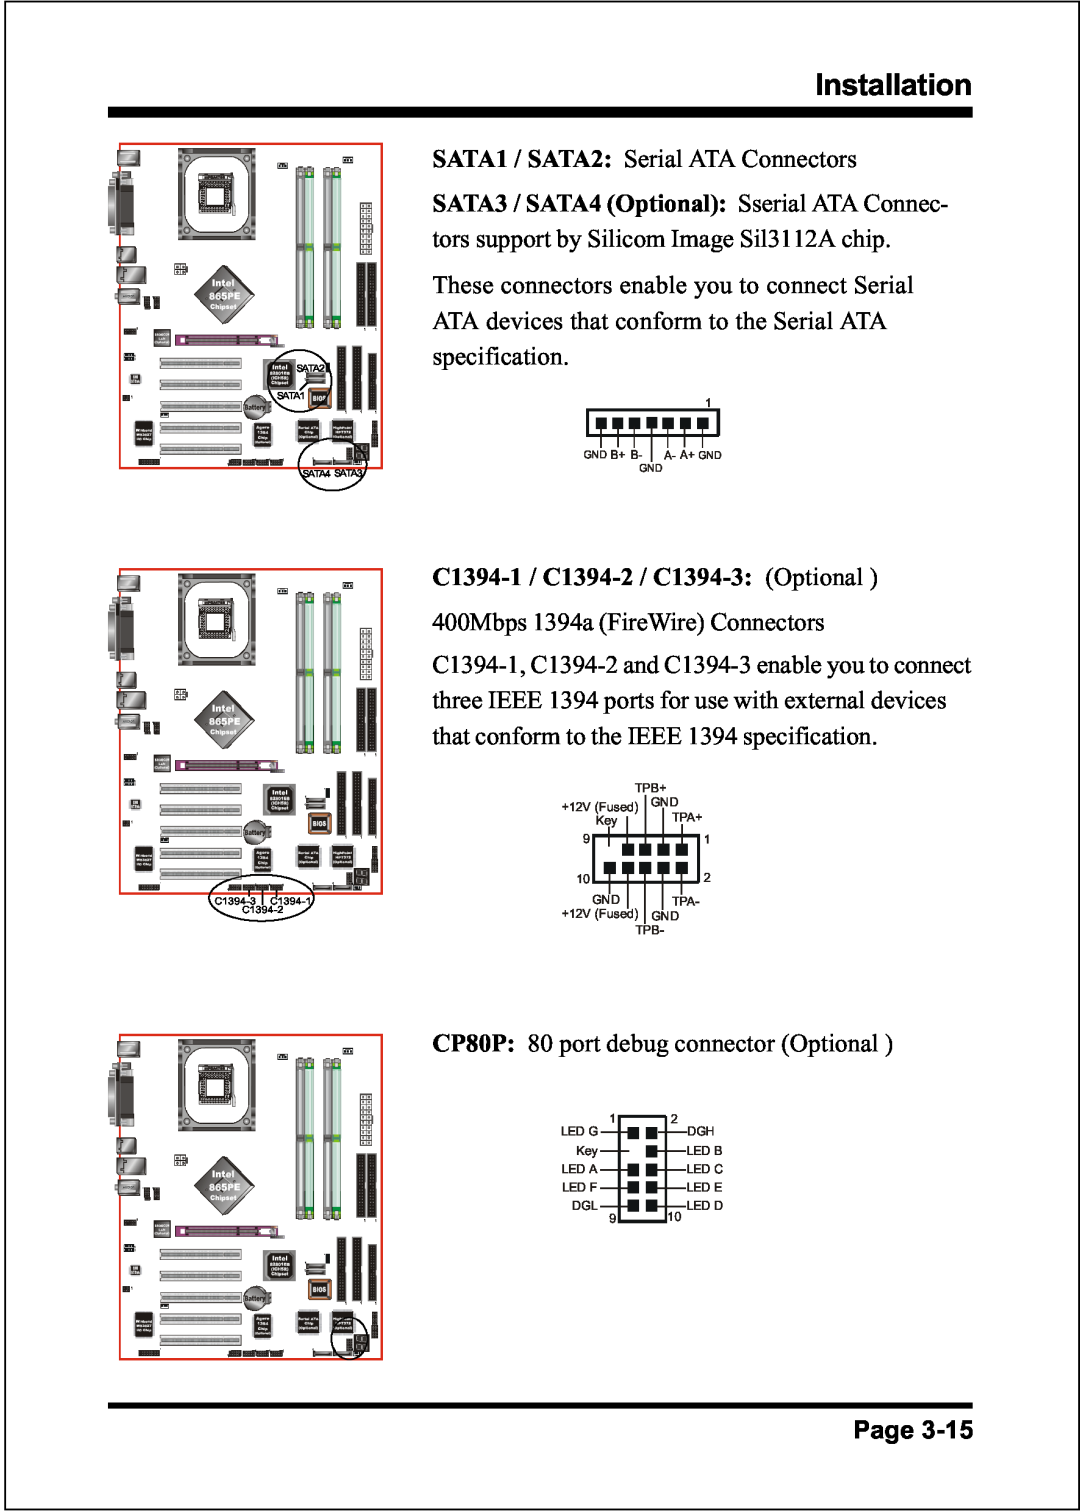 Intel FSB400 / DDR266 (PC2100), FSB800 (PC2700), FSB800 (PC3200), FSB533 Installation, SATA1 / SATA2: Serial ATA Connectors 